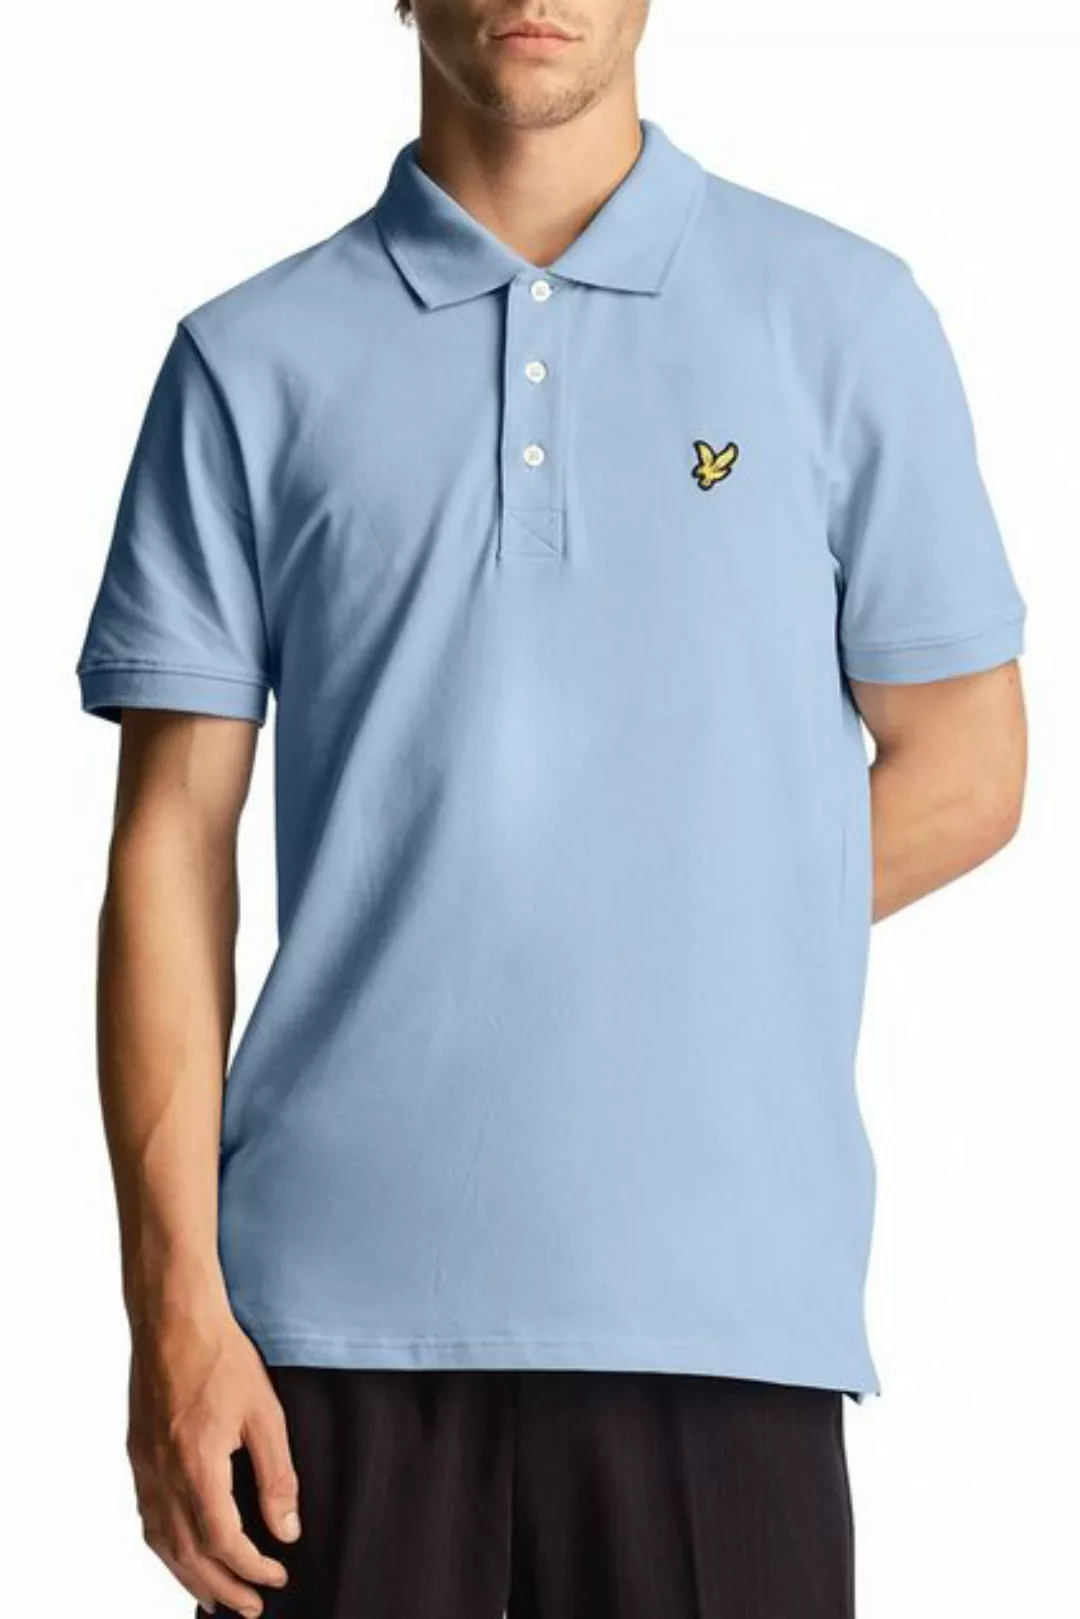 Lyle and Scott Blau Poloshirt - Größe L günstig online kaufen